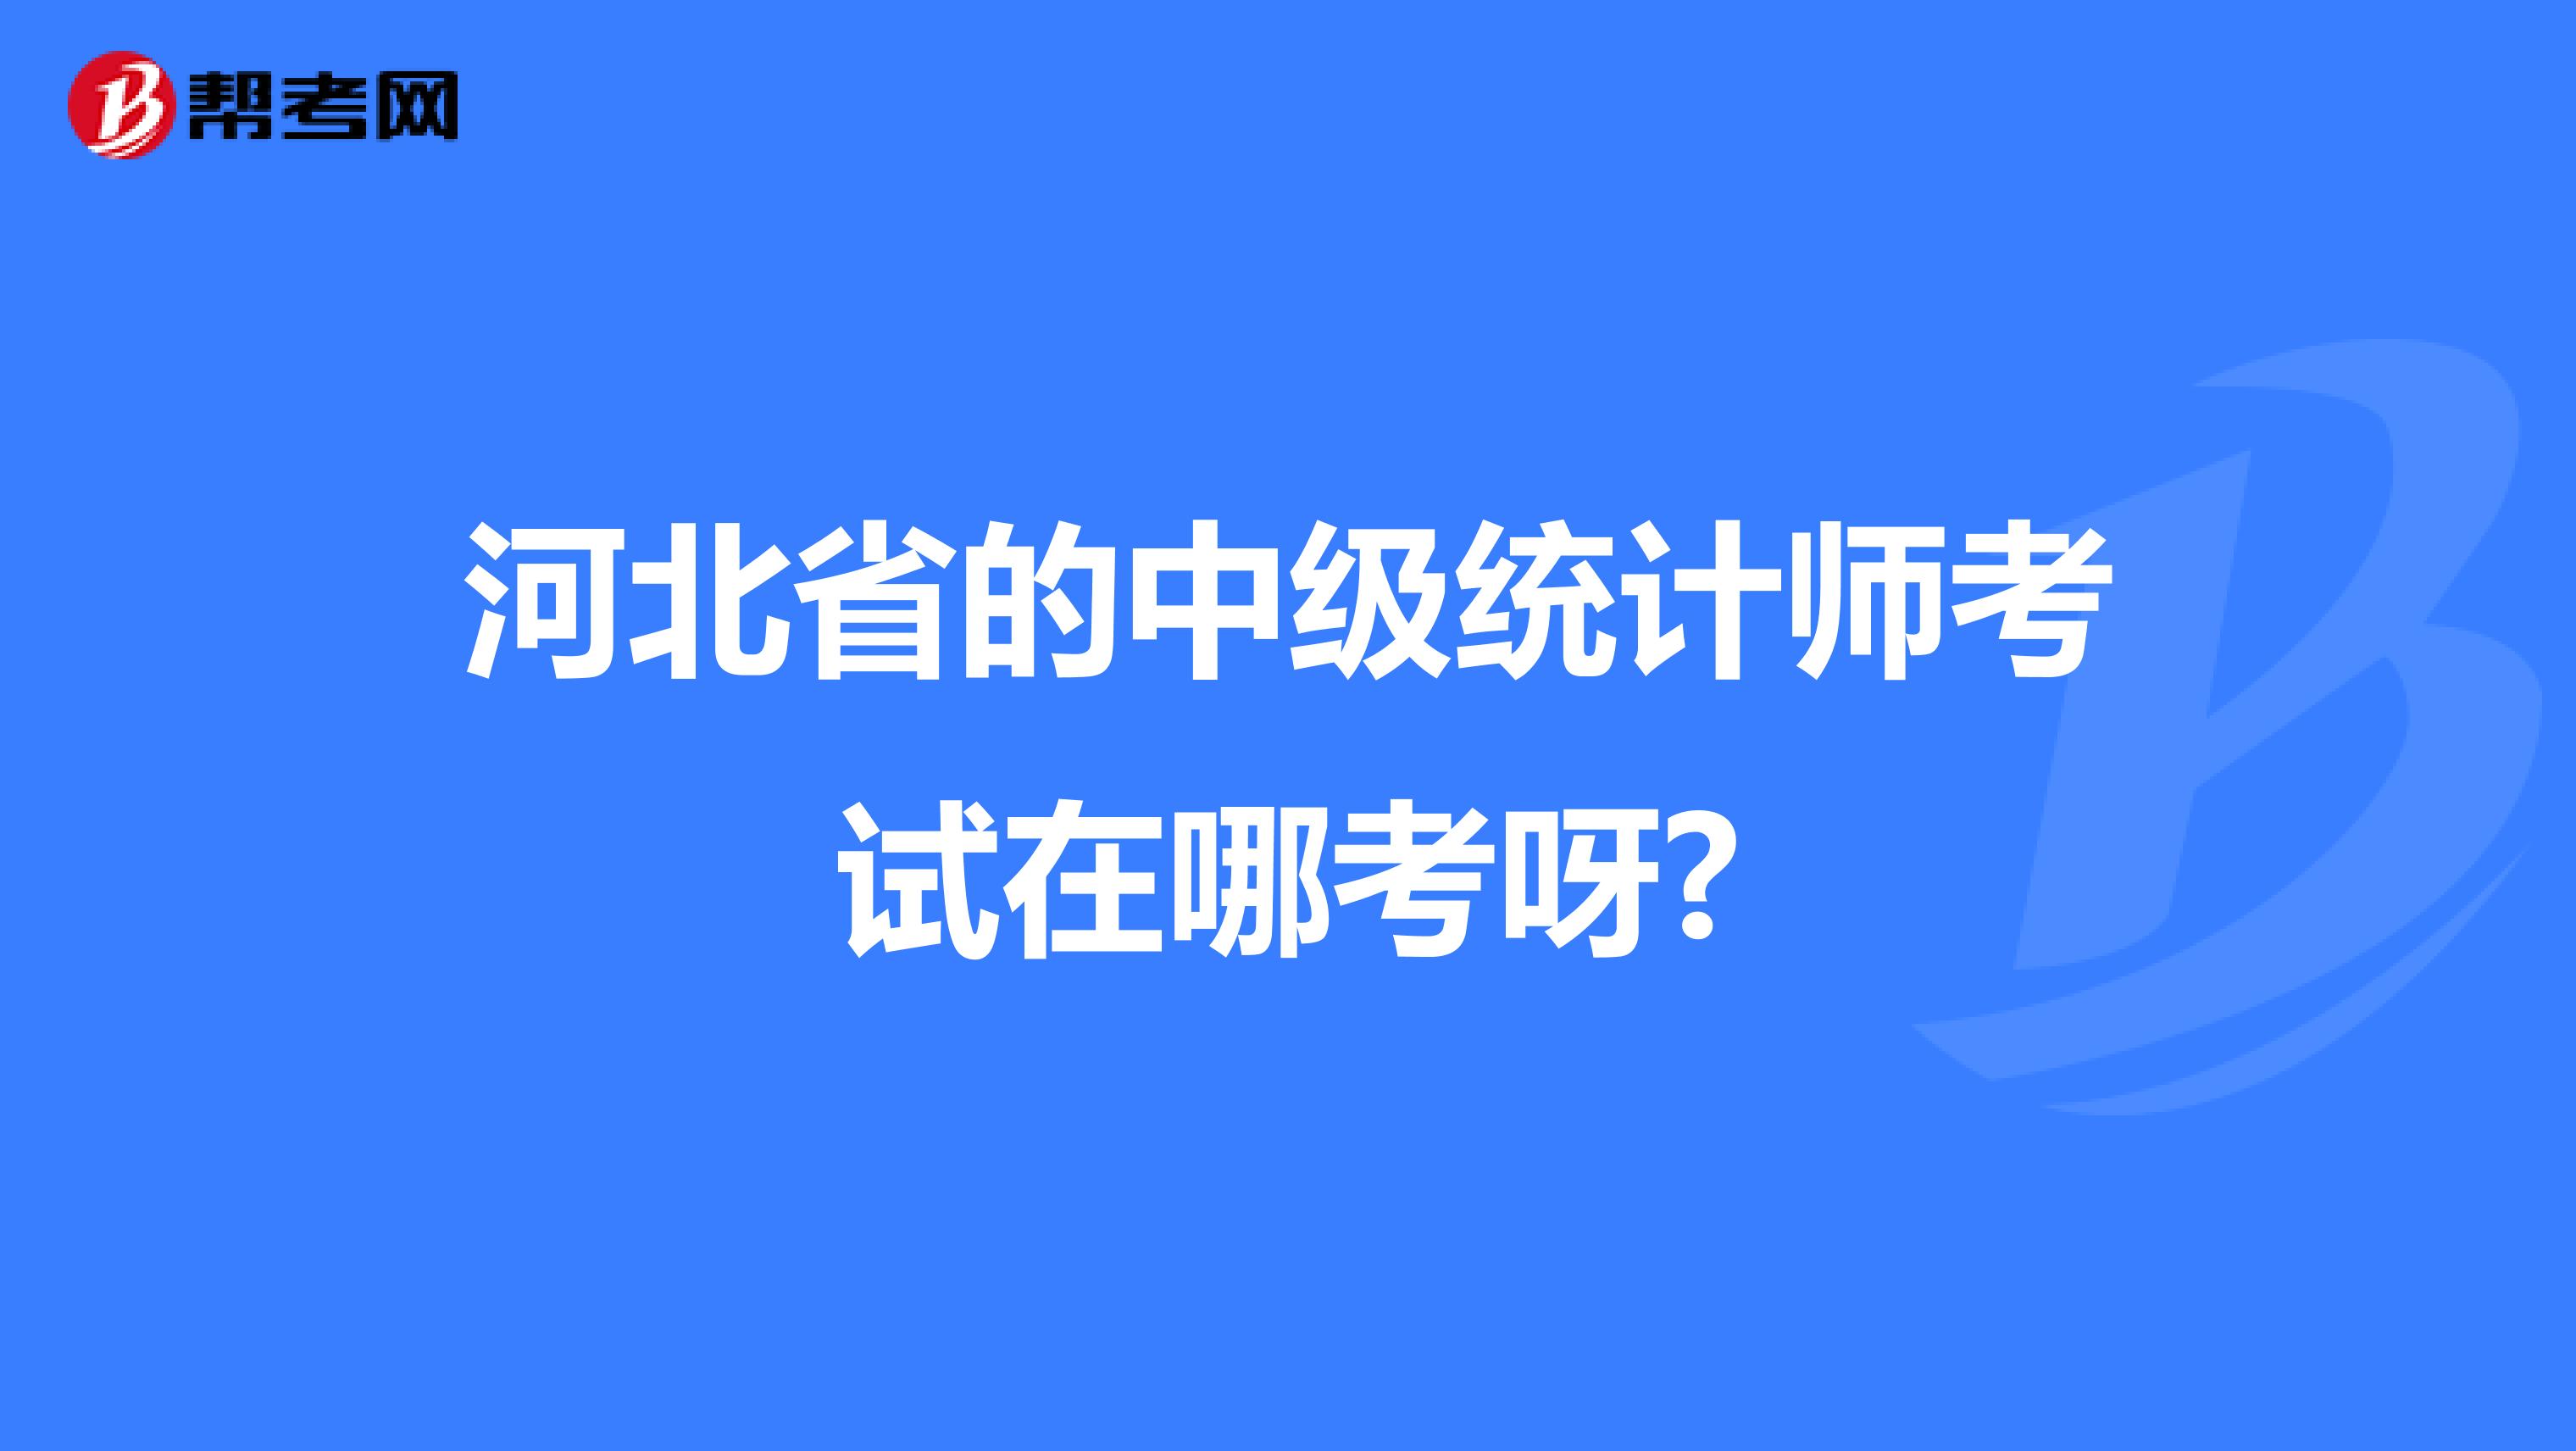 河北省的中级统计师考试在哪考呀?